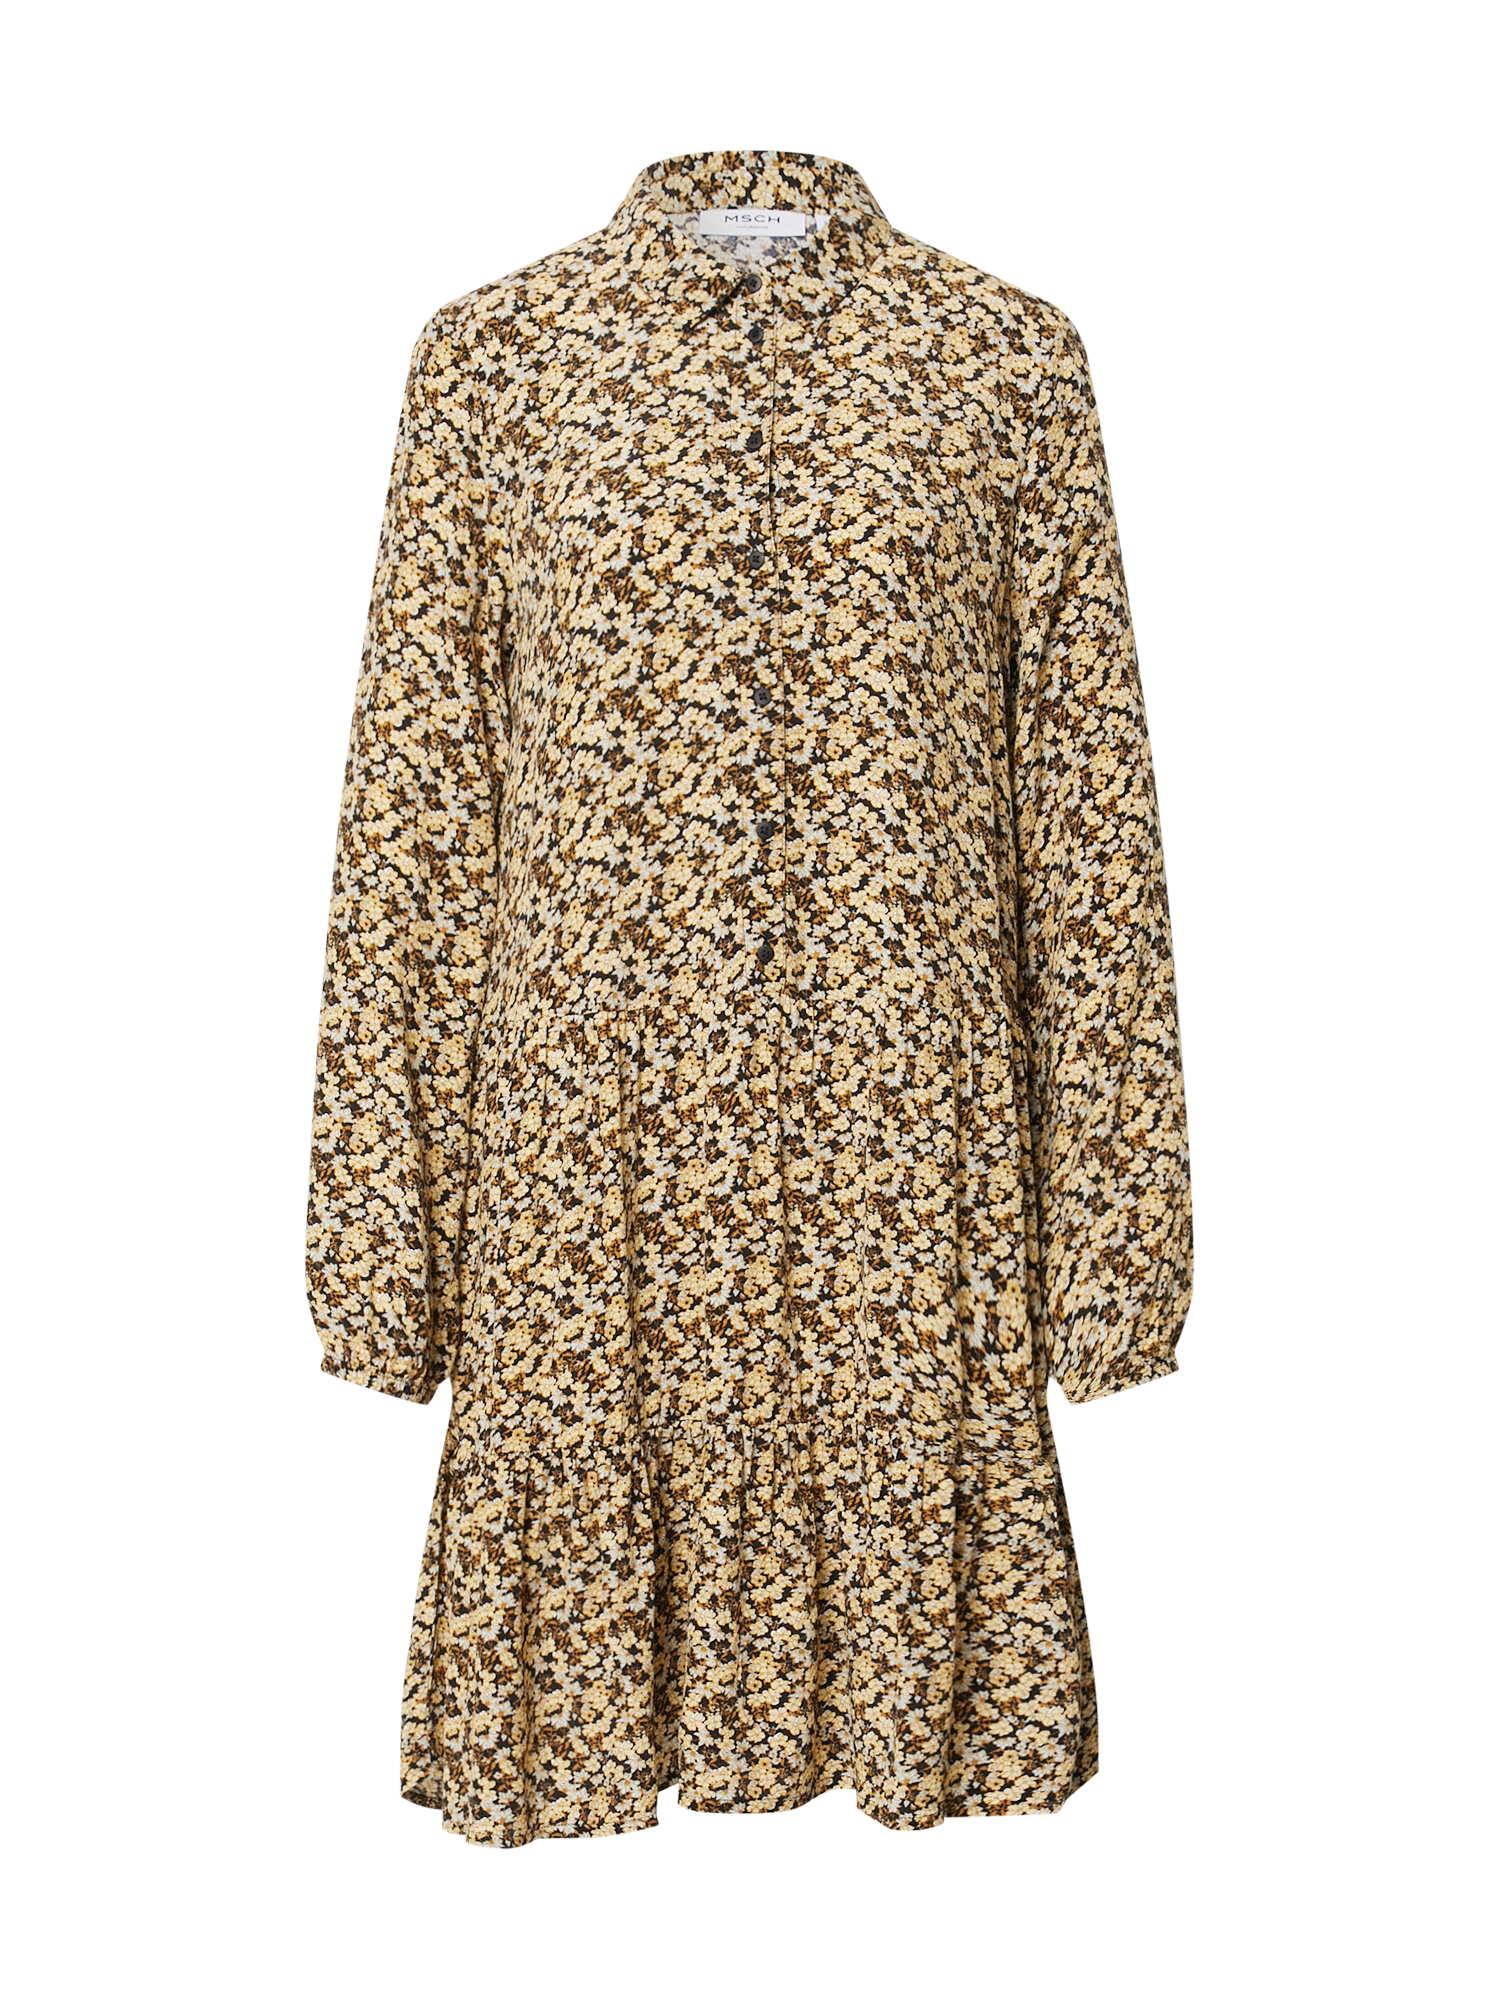 xHfEx Sukienki MOSS COPENHAGEN Sukienka koszulowa Wilda Morocco w kolorze Musztardowy, Pastelowo-Żółtym 